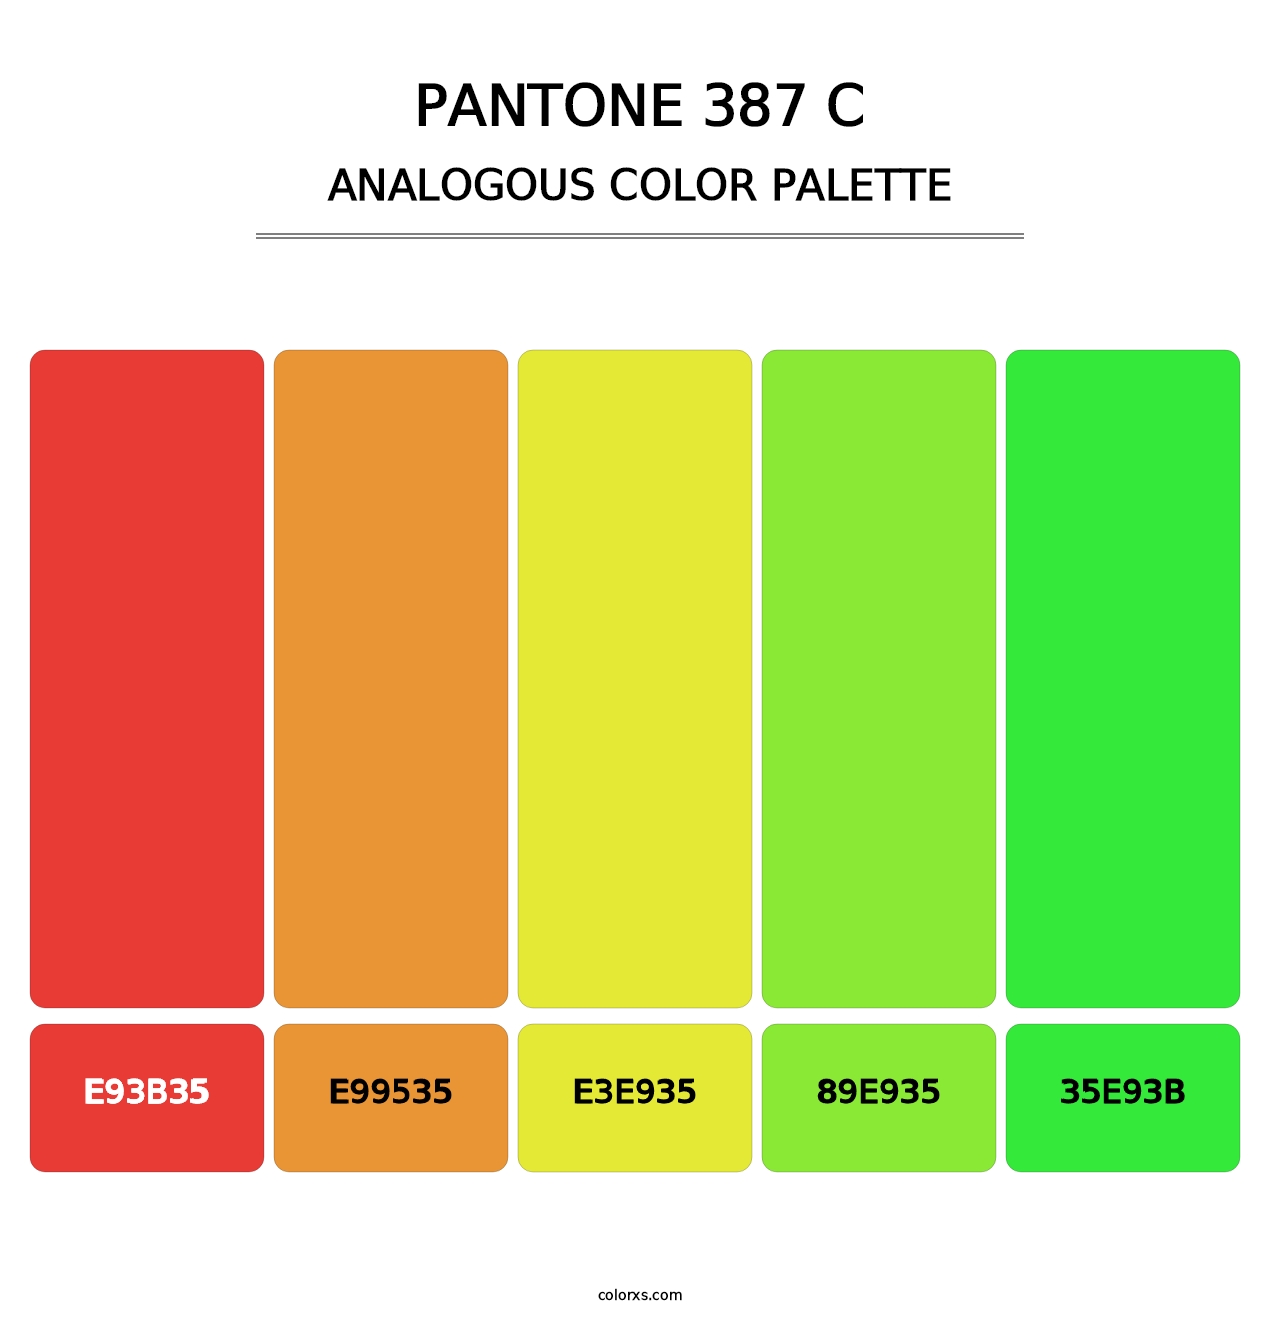 PANTONE 387 C - Analogous Color Palette